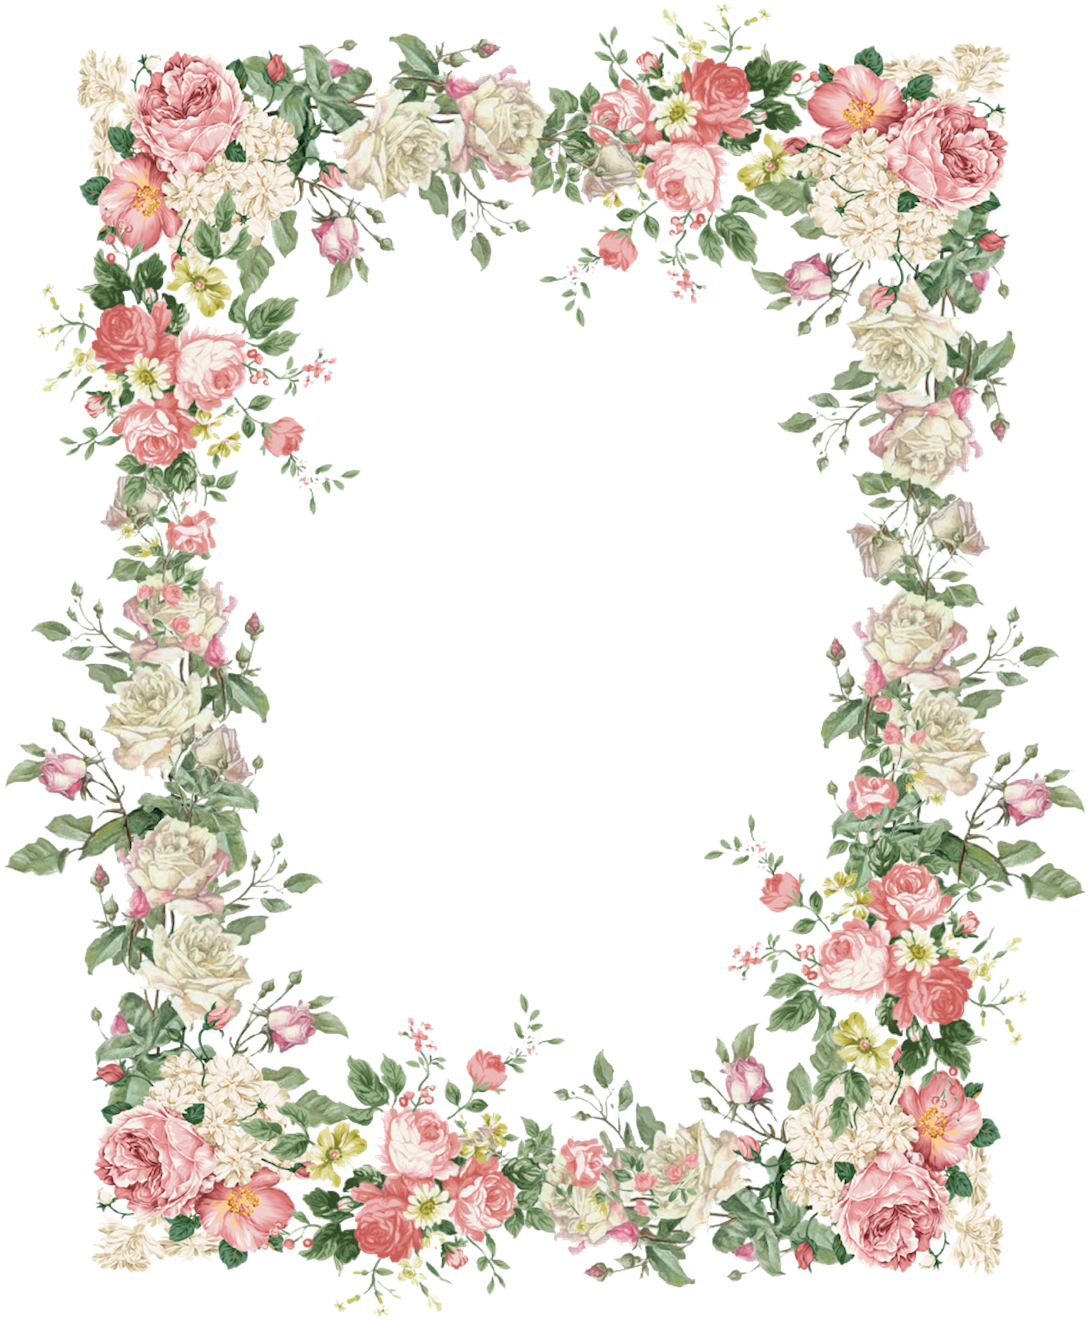 Floral Vintage Frame Design PNG image